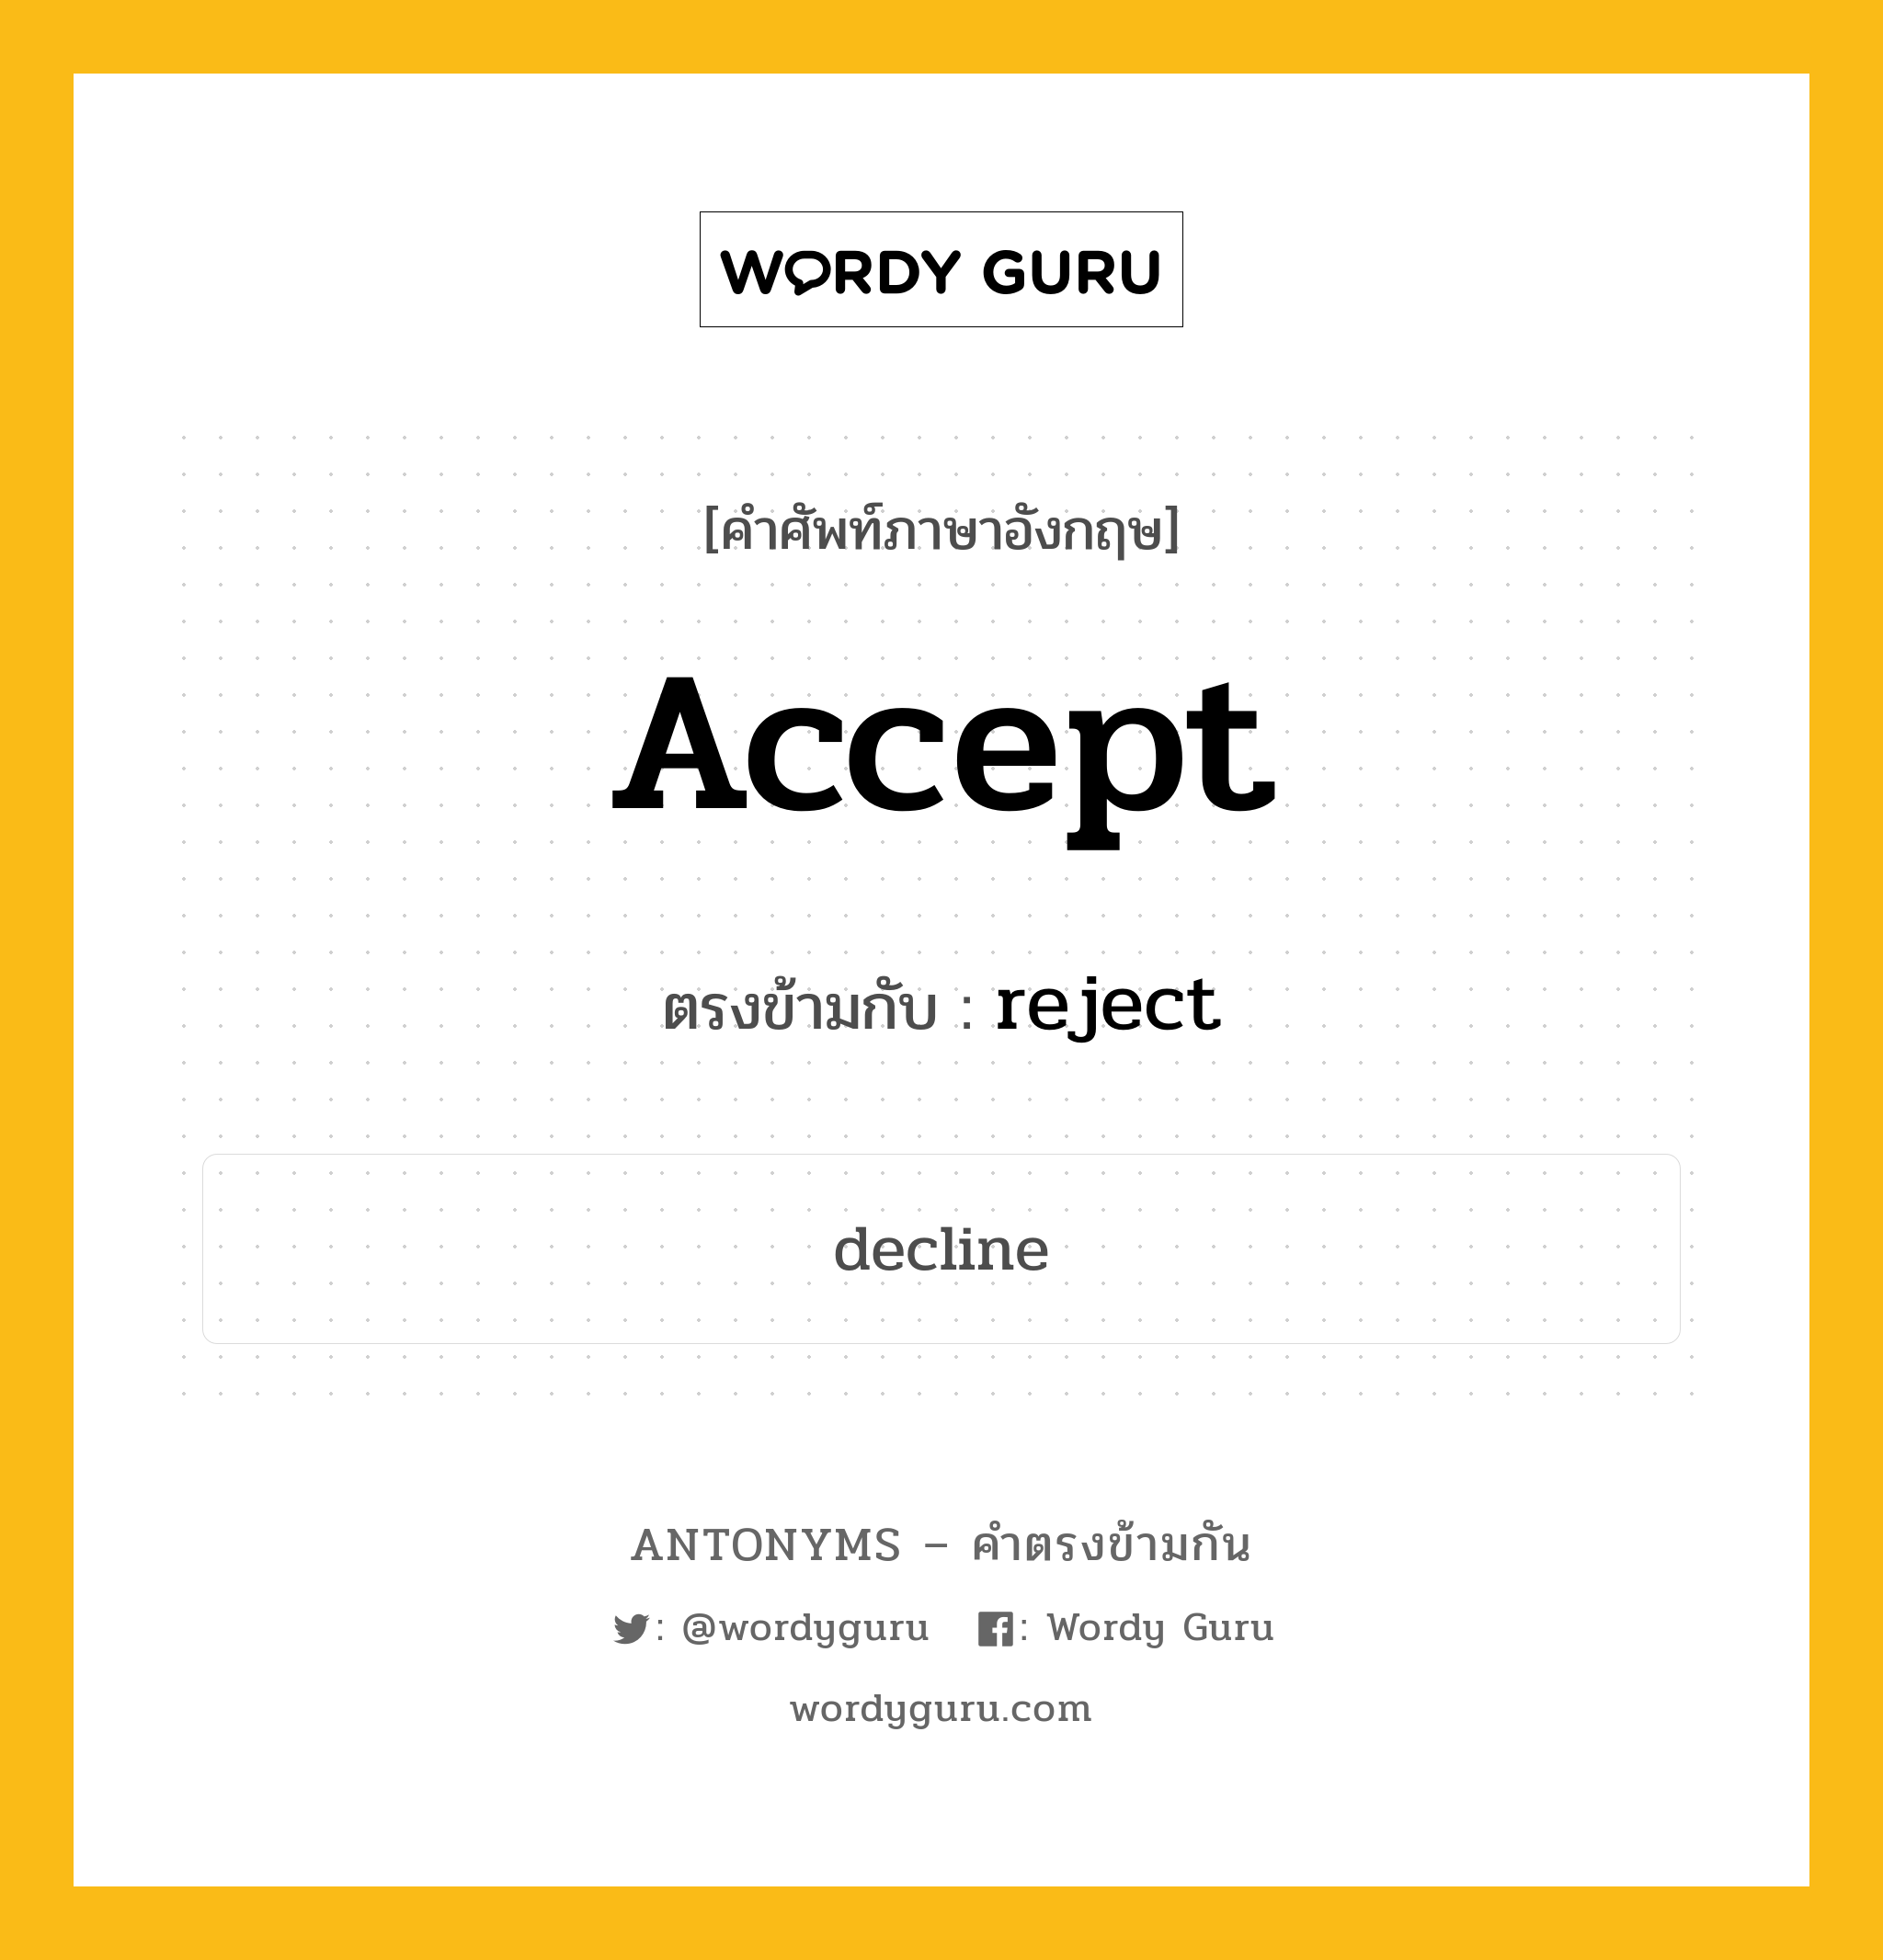 accept เป็นคำตรงข้ามกับคำไหนบ้าง?, คำศัพท์ภาษาอังกฤษ accept ตรงข้ามกับ reject หมวด reject